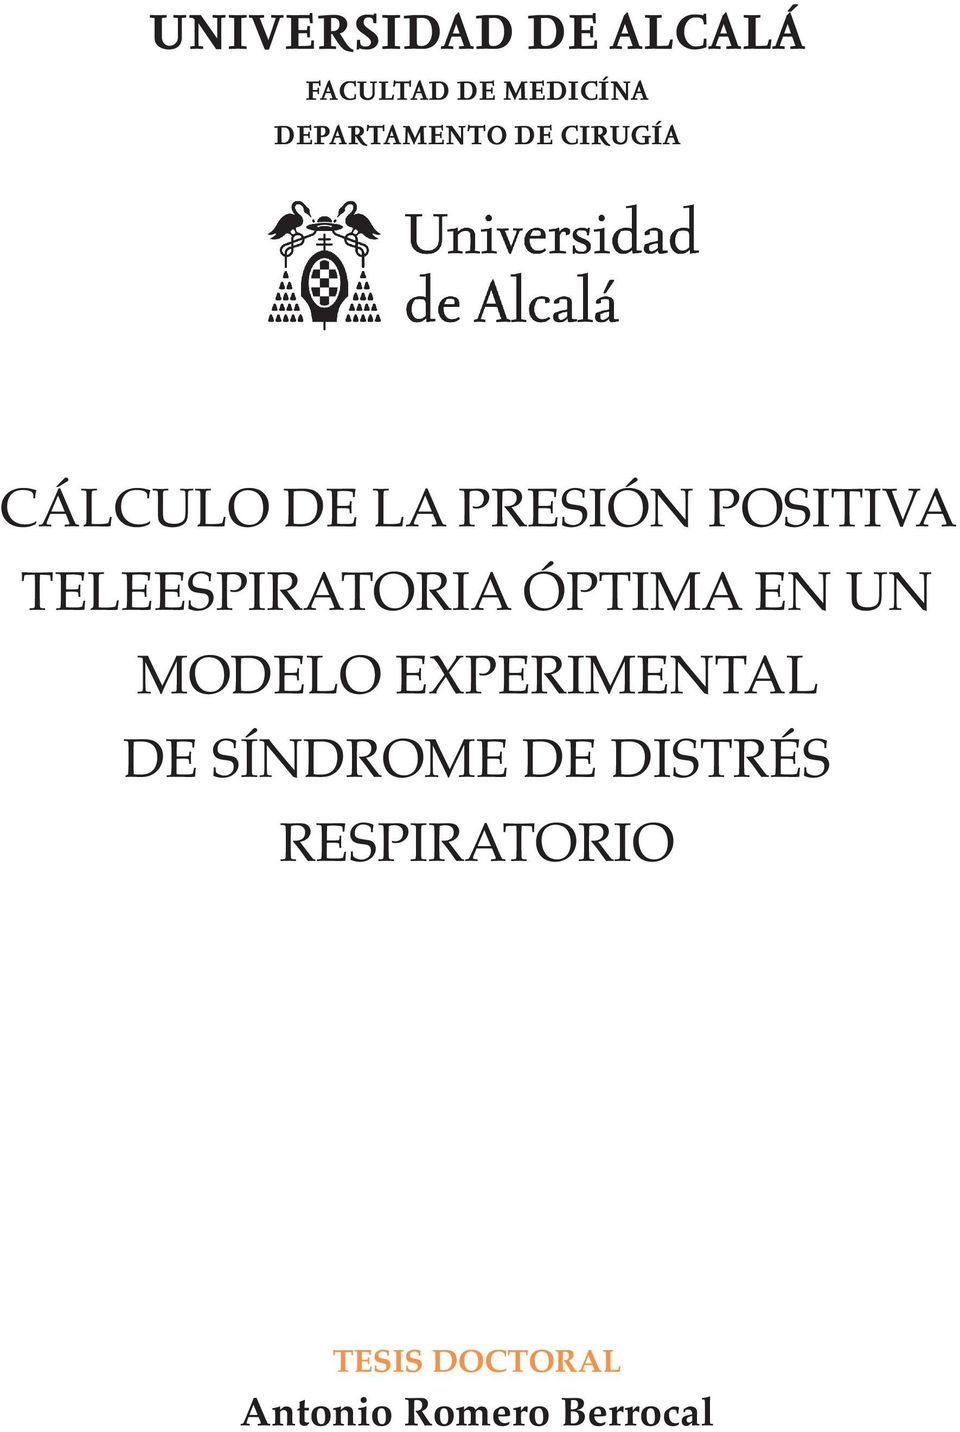 TELEESPIRATORIA ÓPTIMA EN UN MODELO EXPERIMENTAL DE